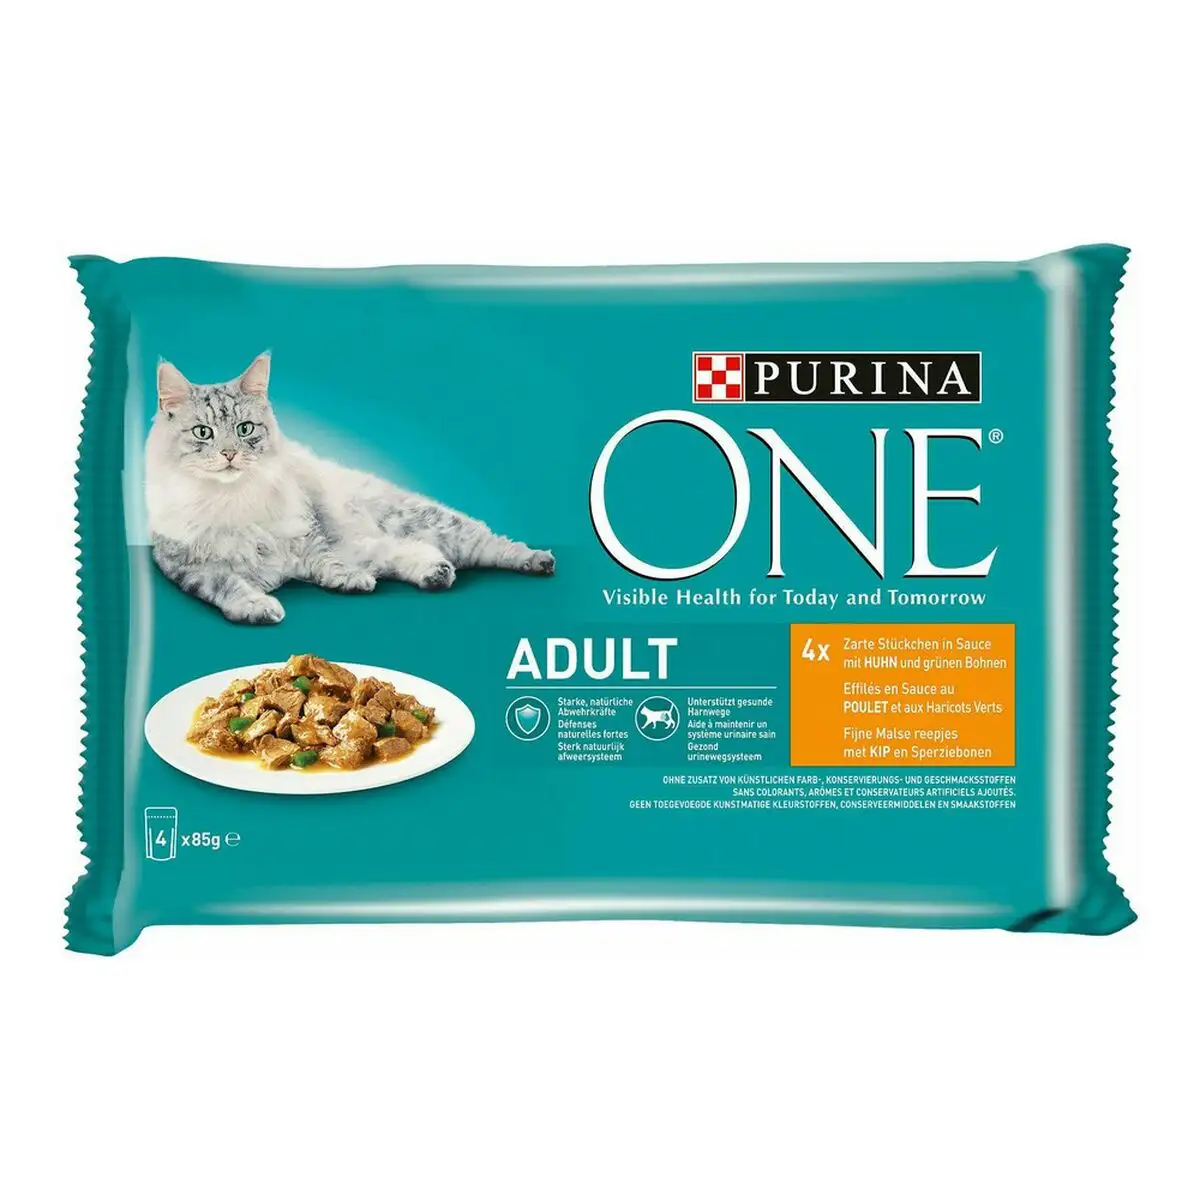 Aliments pour chat purina one adult 4 x 85 g _4515. DIAYTAR SENEGAL - L'Art de Choisir, l'Art de Se Distinquer. Naviguez à travers notre catalogue et choisissez des produits qui ajoutent une note d'élégance à votre style unique.